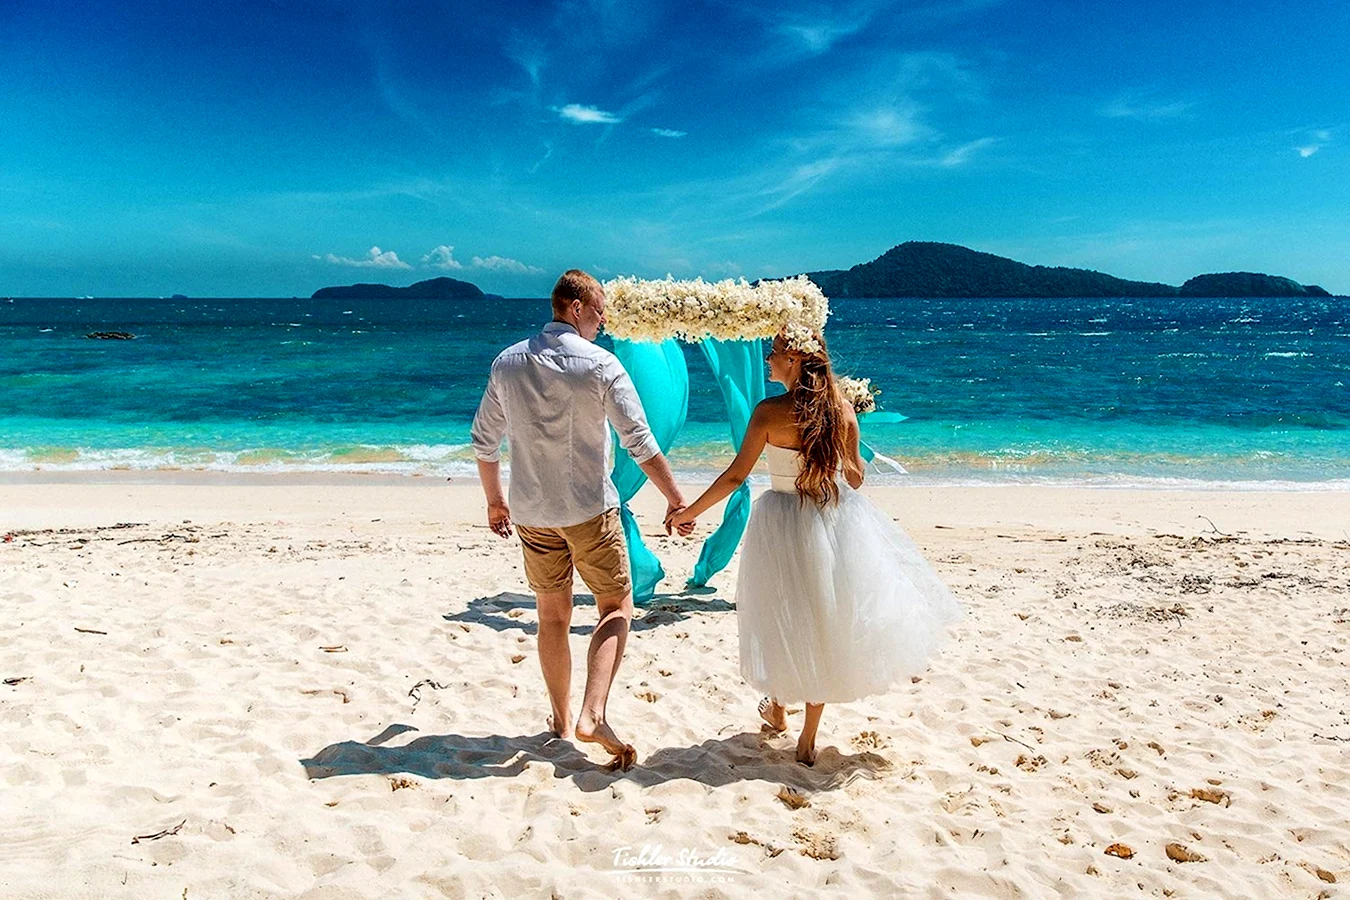 Свадебная фотосессия на море